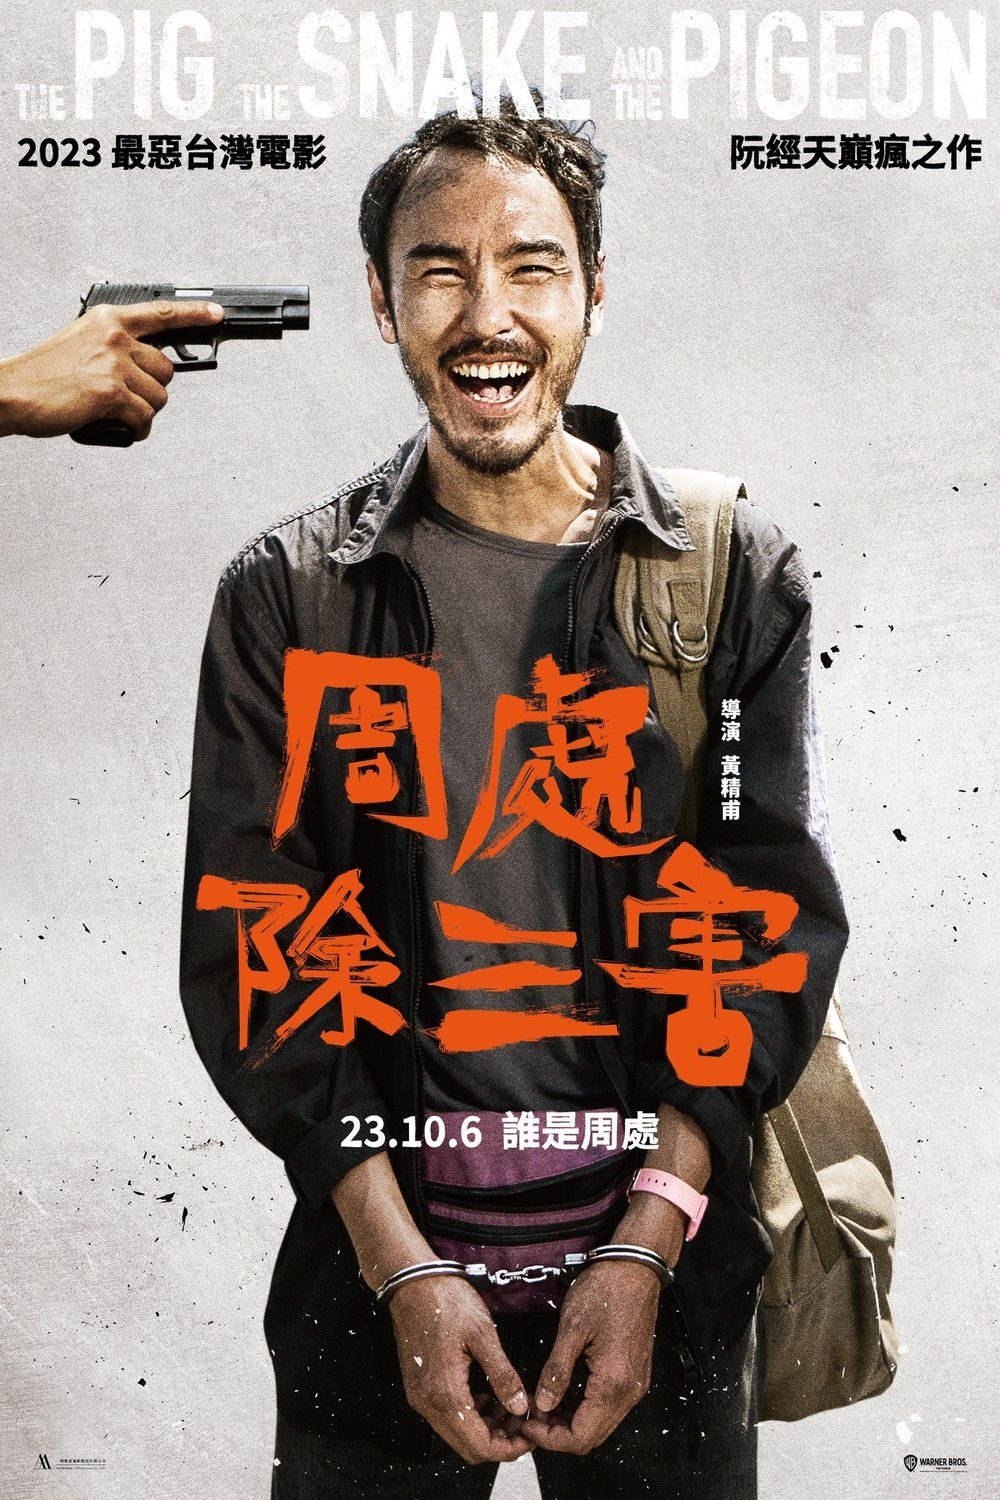 L'affiche originale du film The Pig, the Snake and the Pigeon en mandarin